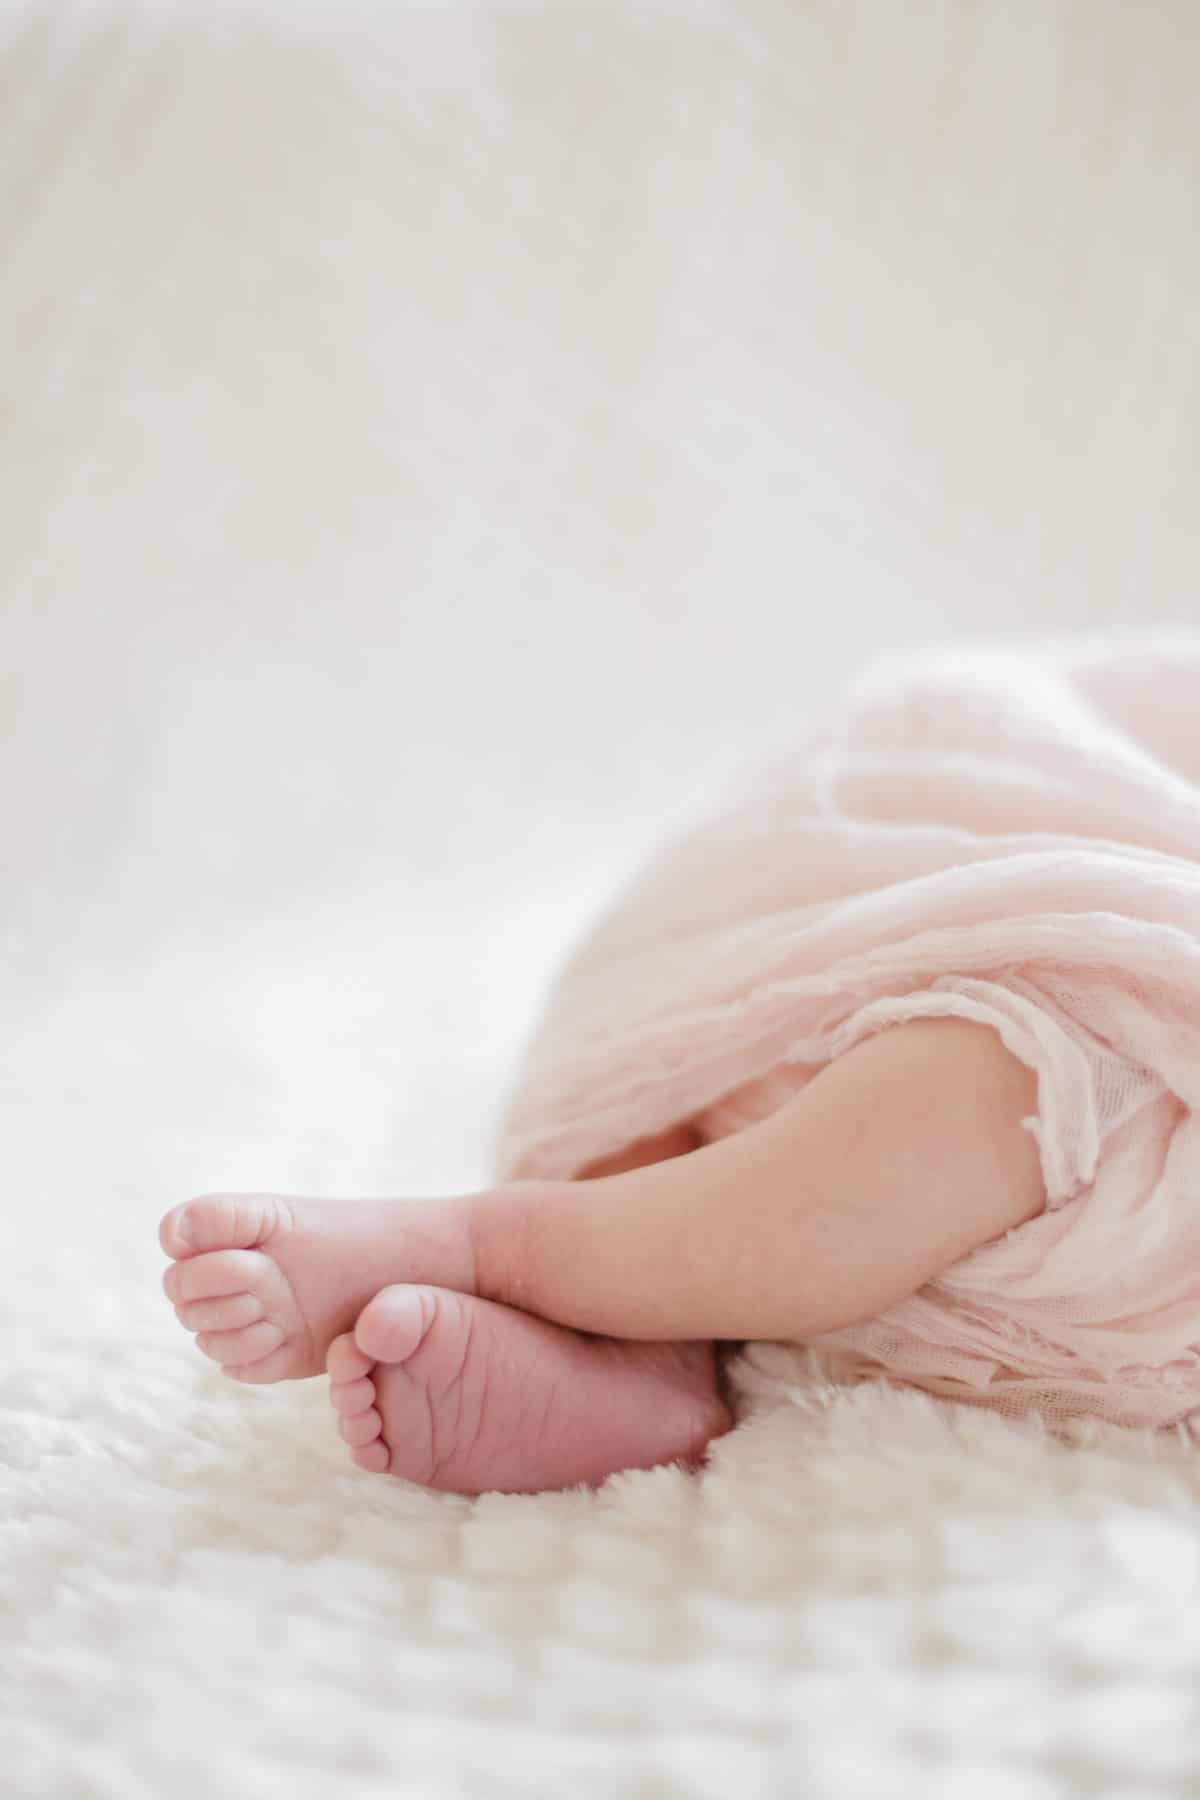 photographe bébé nouveau-né maternité bordeaux séance photo maison à domicile lifestyle fineart francais sarah miramon carla 07